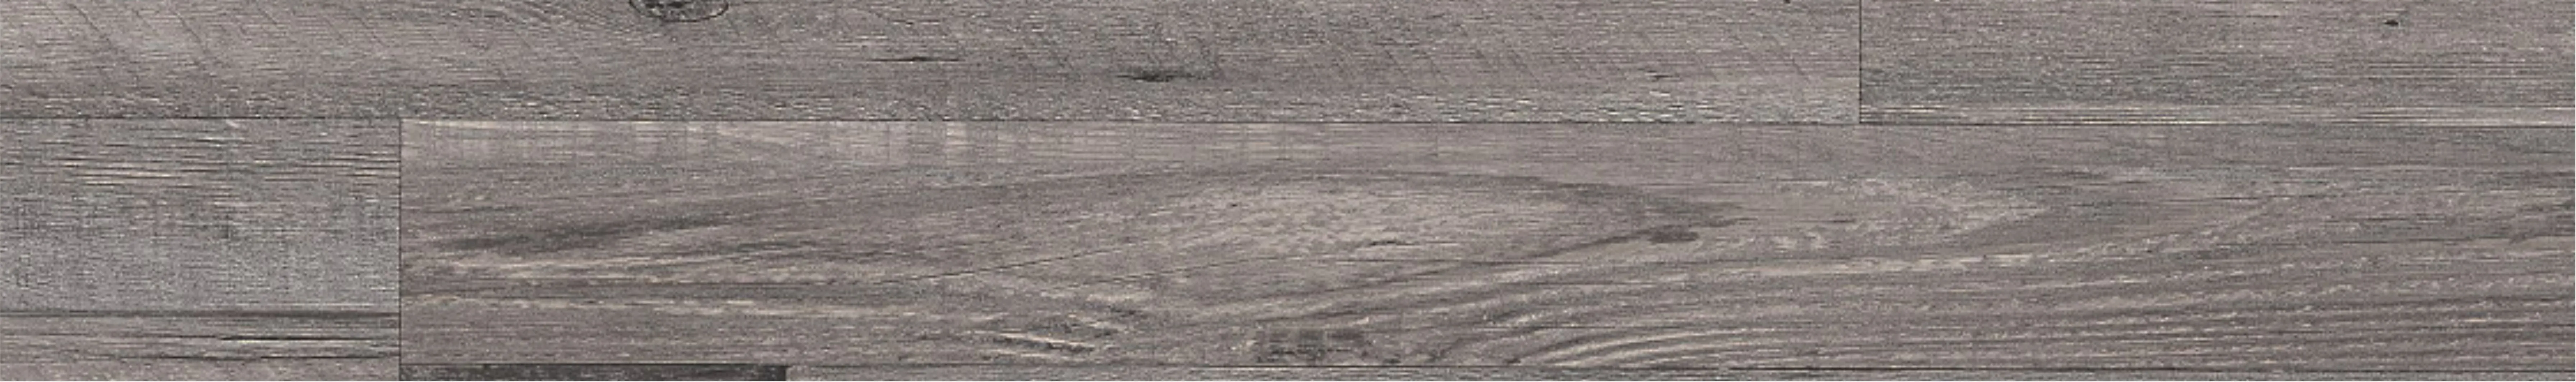 SPC - Vinyl Flooring Tiles - 1220 x 181 mm - NEON